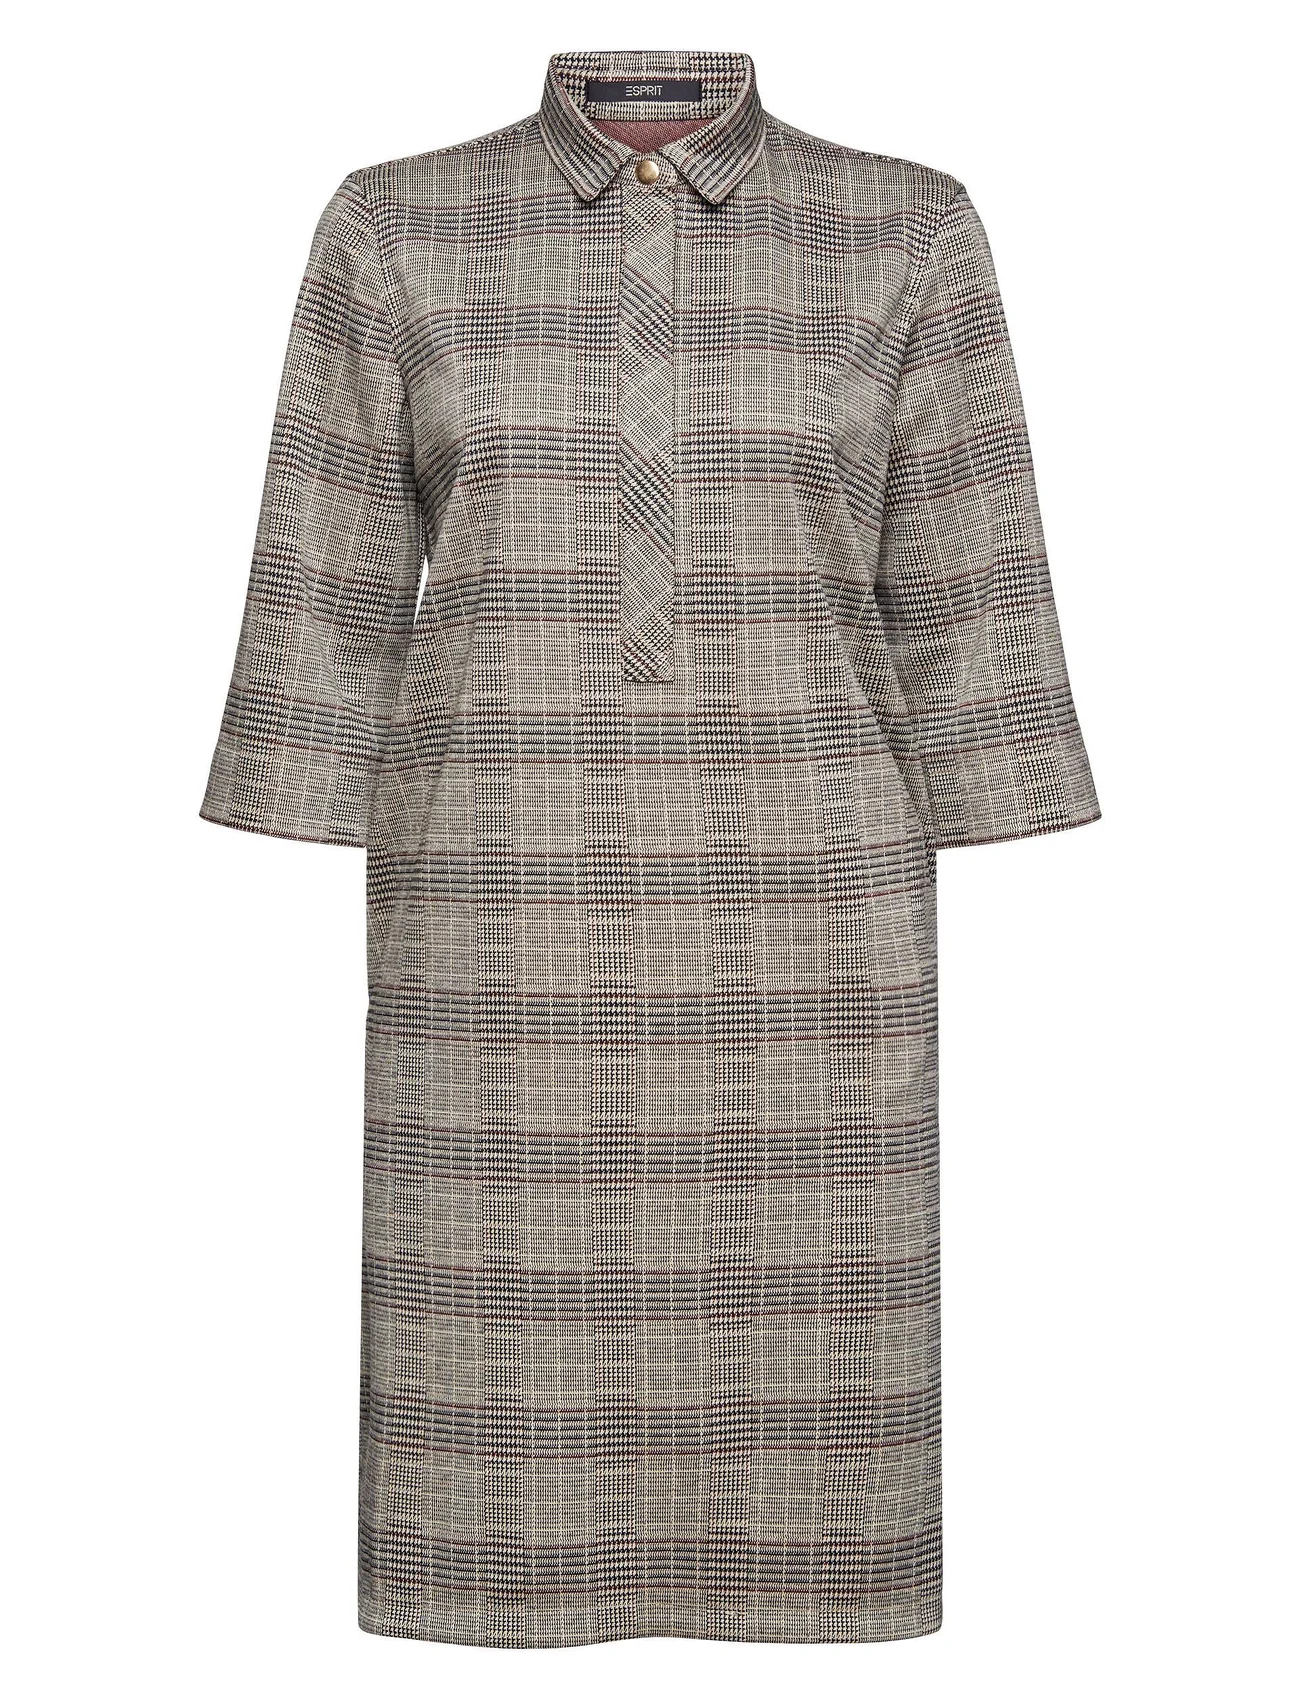 Esprit Collection - Prince of Wales mix & match dress - marškinių tipo suknelės - ice 3 - 0